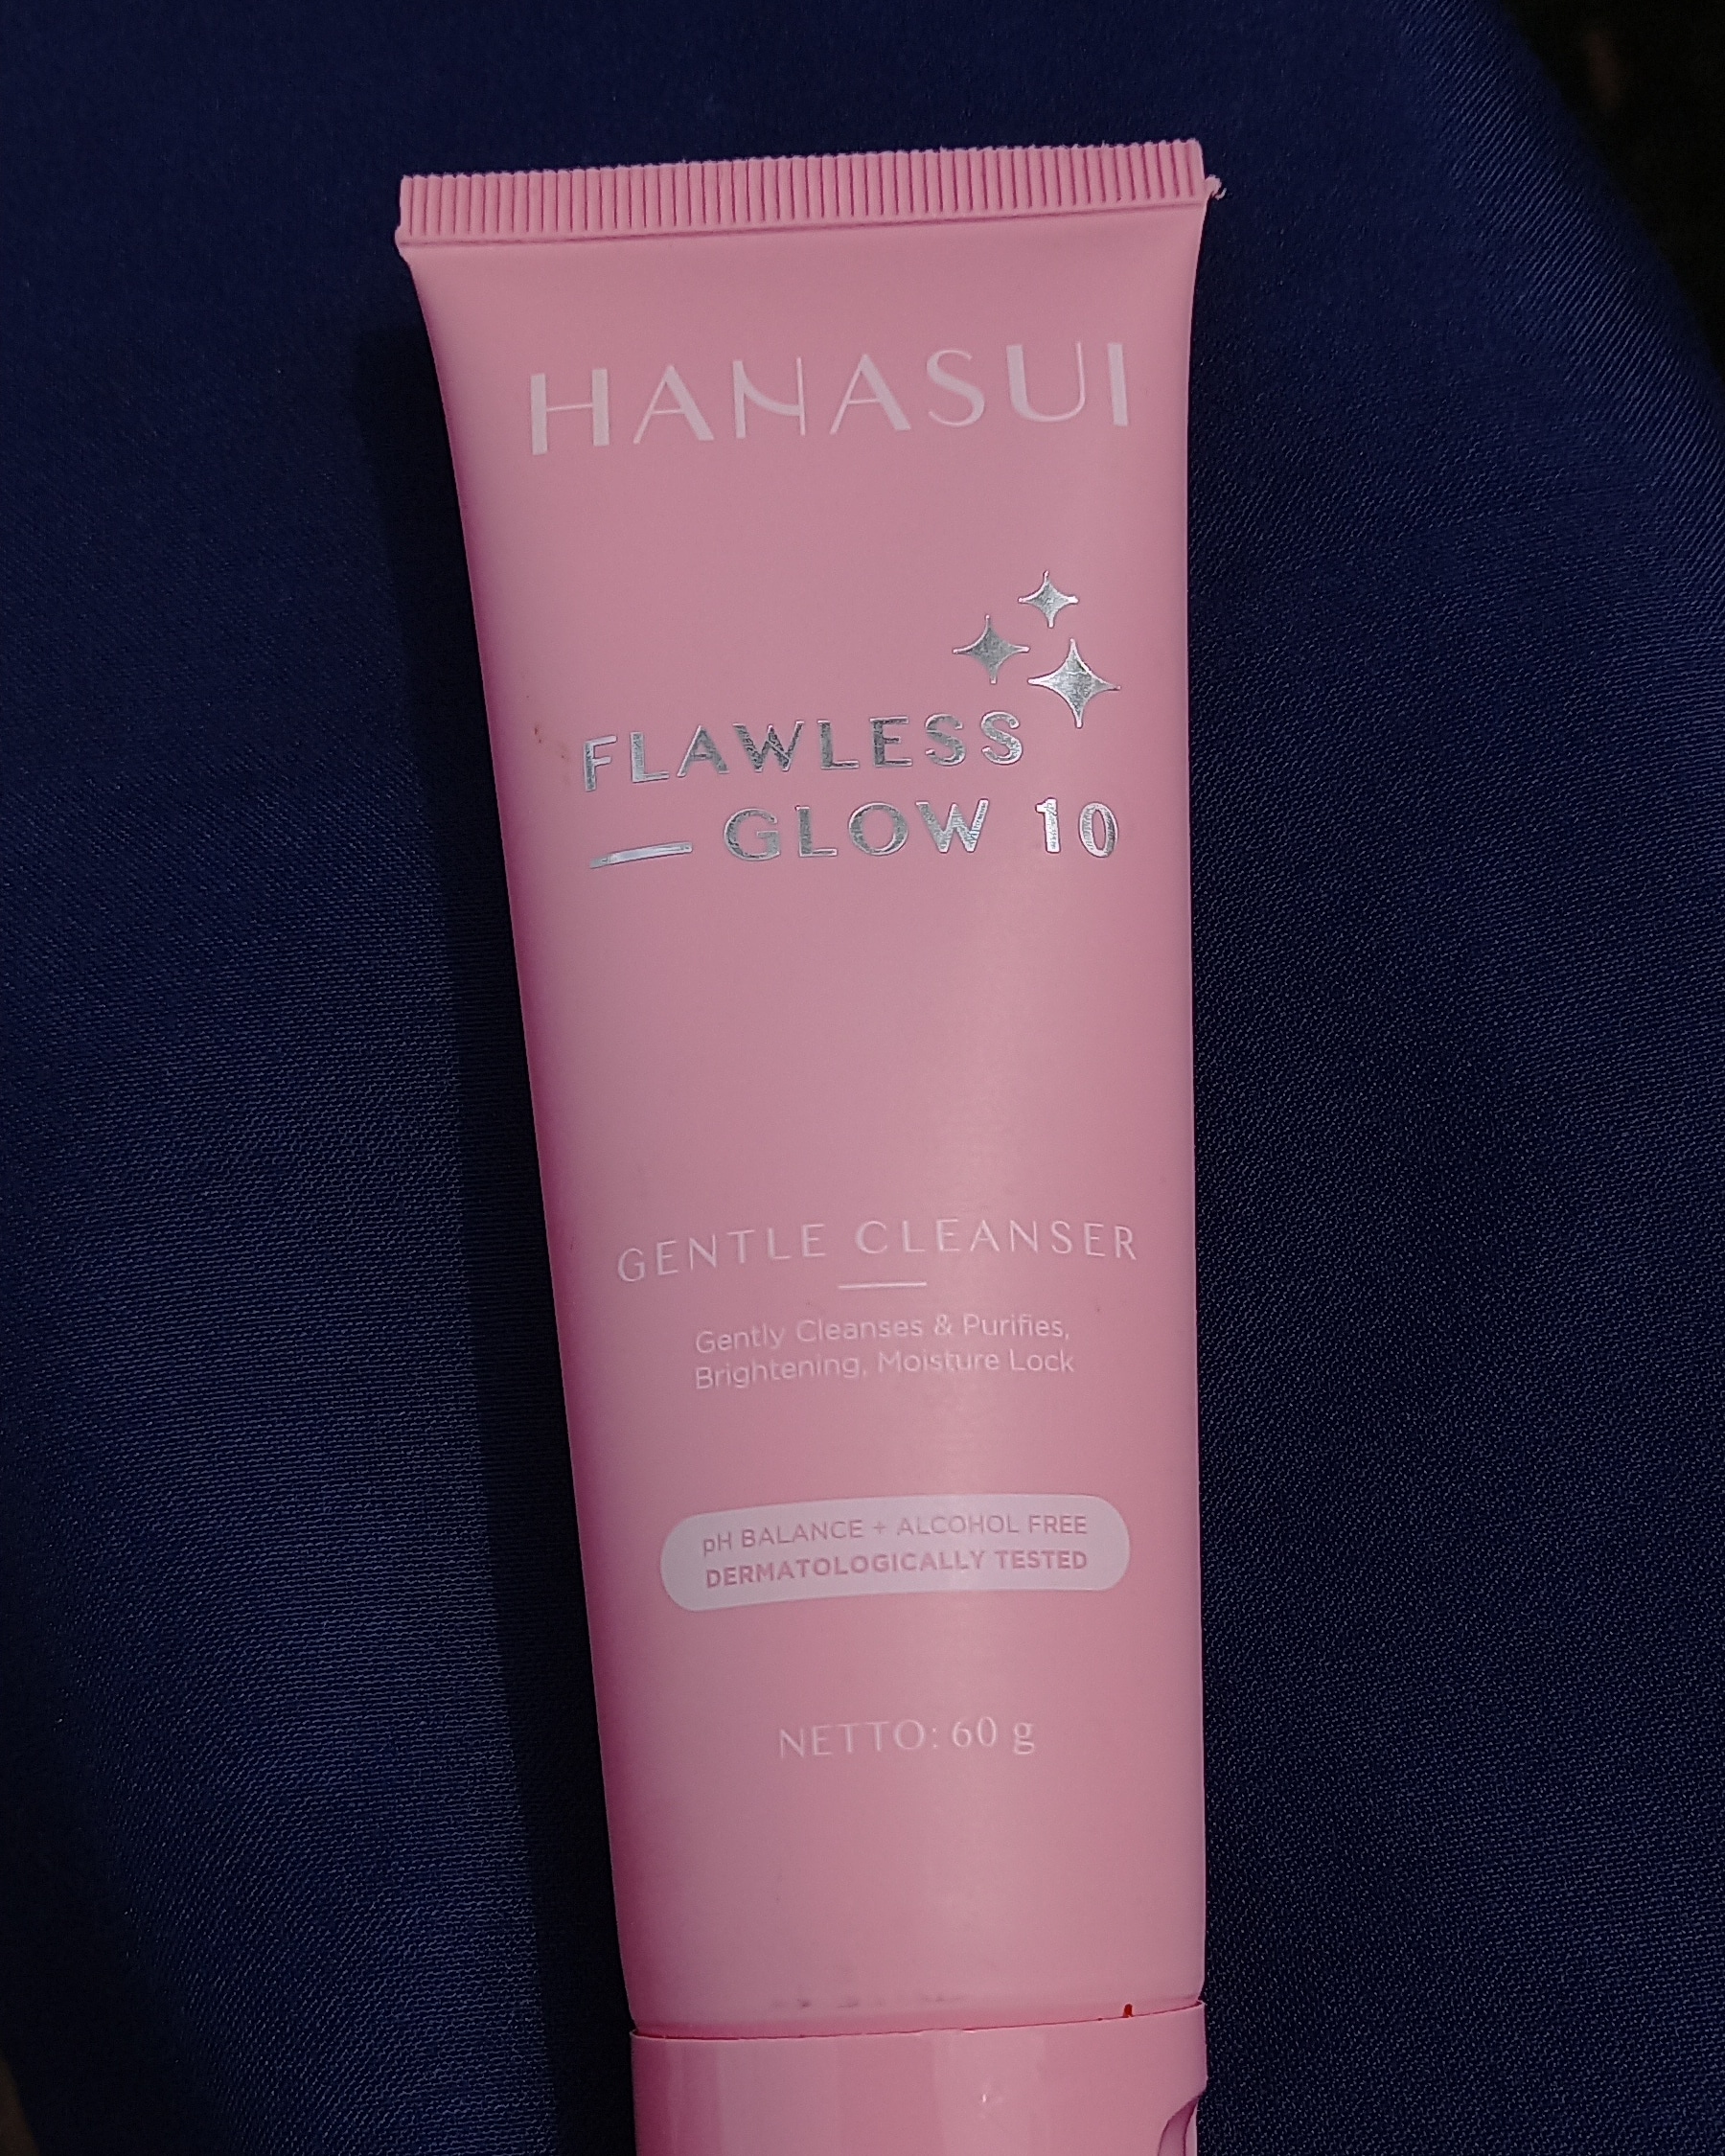 Gentle Cleanser Flawless Glow 10 Hanasui